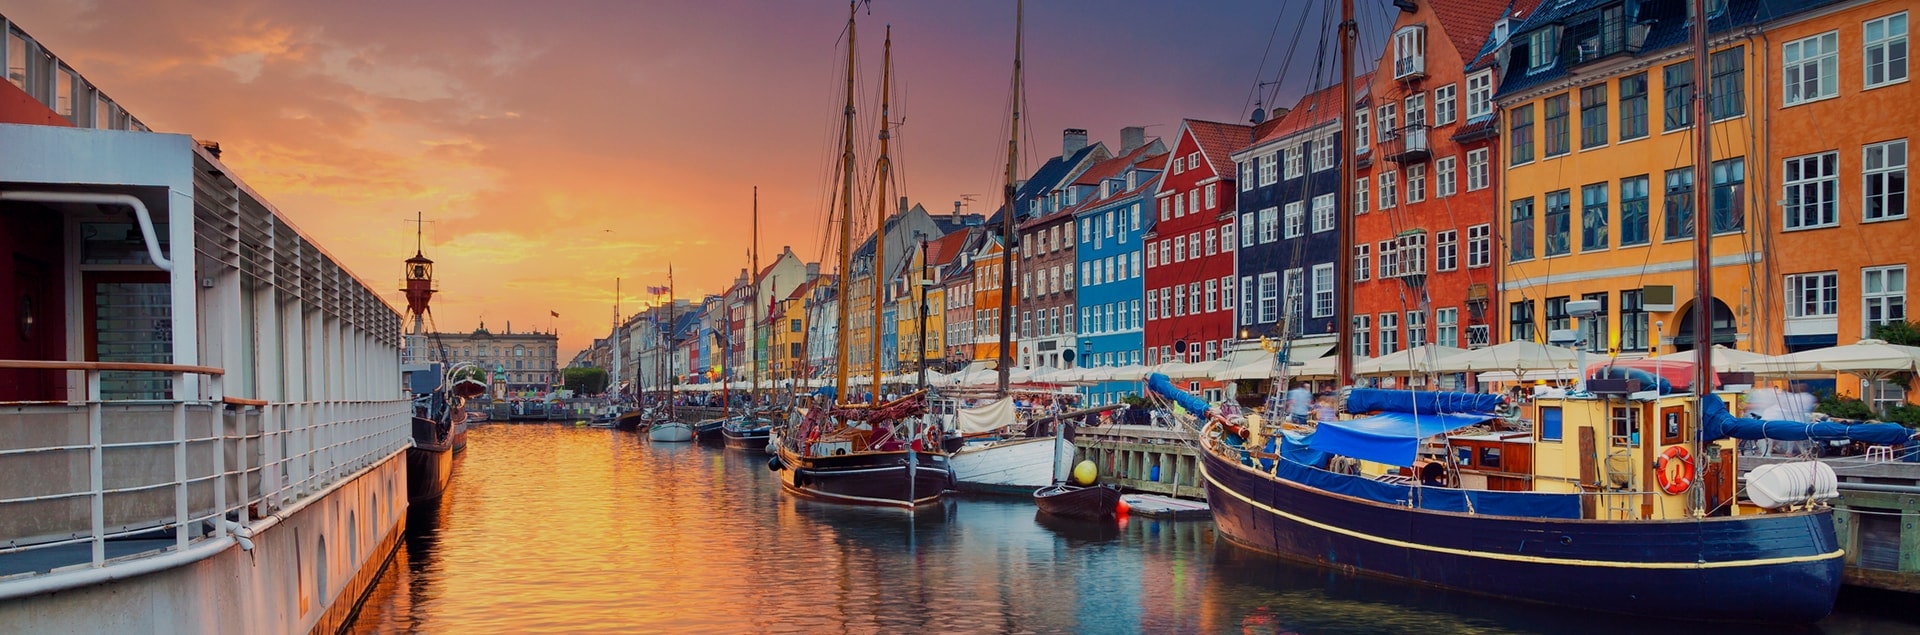 Что посмотреть и попробовать в Копенгагене? ТОП 10 мест